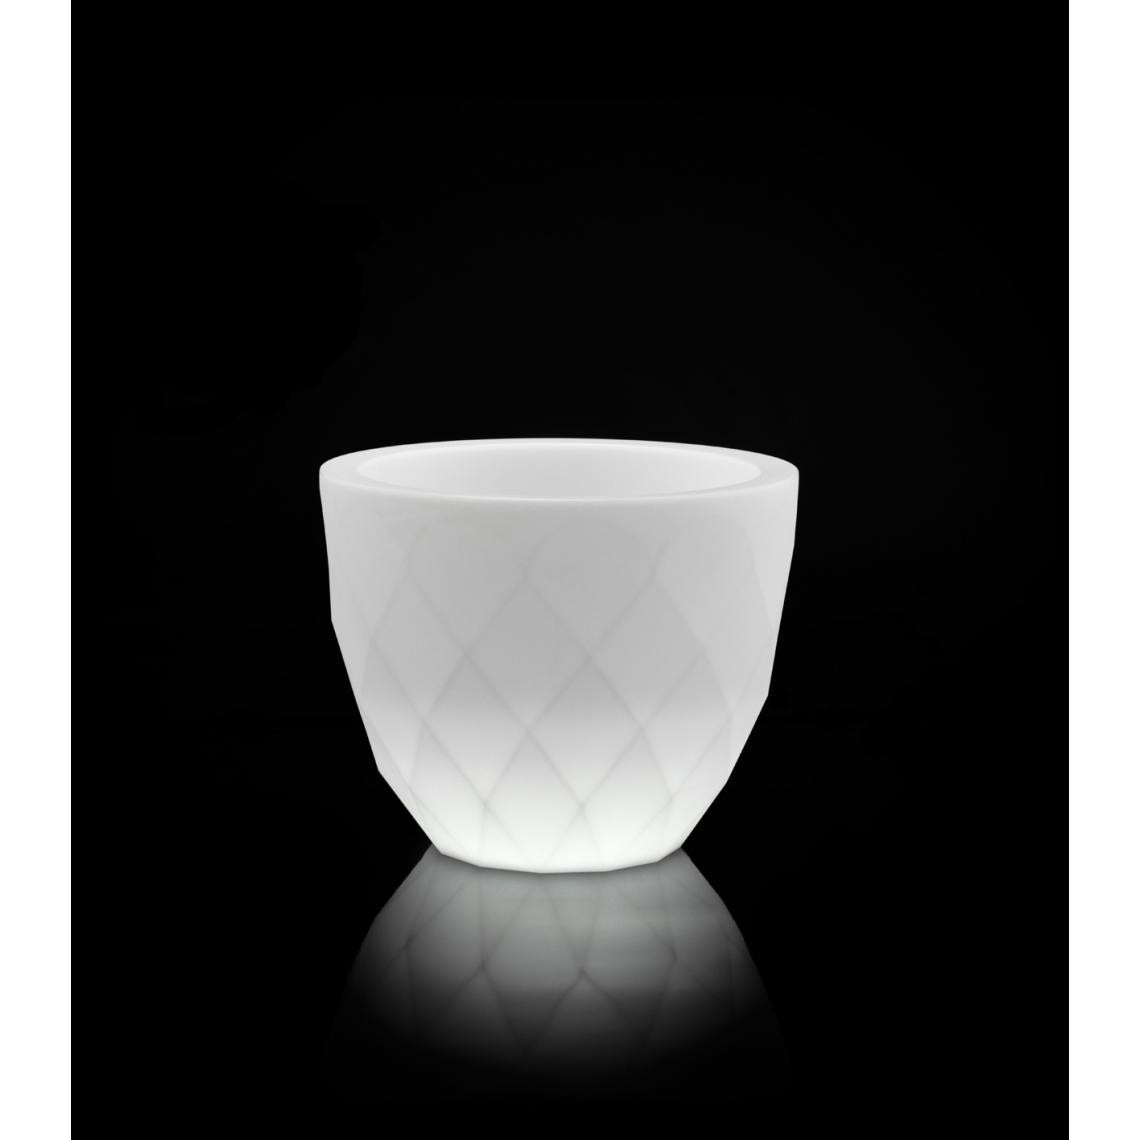 Vondom - Pot de fleurs VASES - grand modèle - LED de couleur - blanc glace (transparent) - Ø 55 x 45 cm - Poterie, bac à fleurs